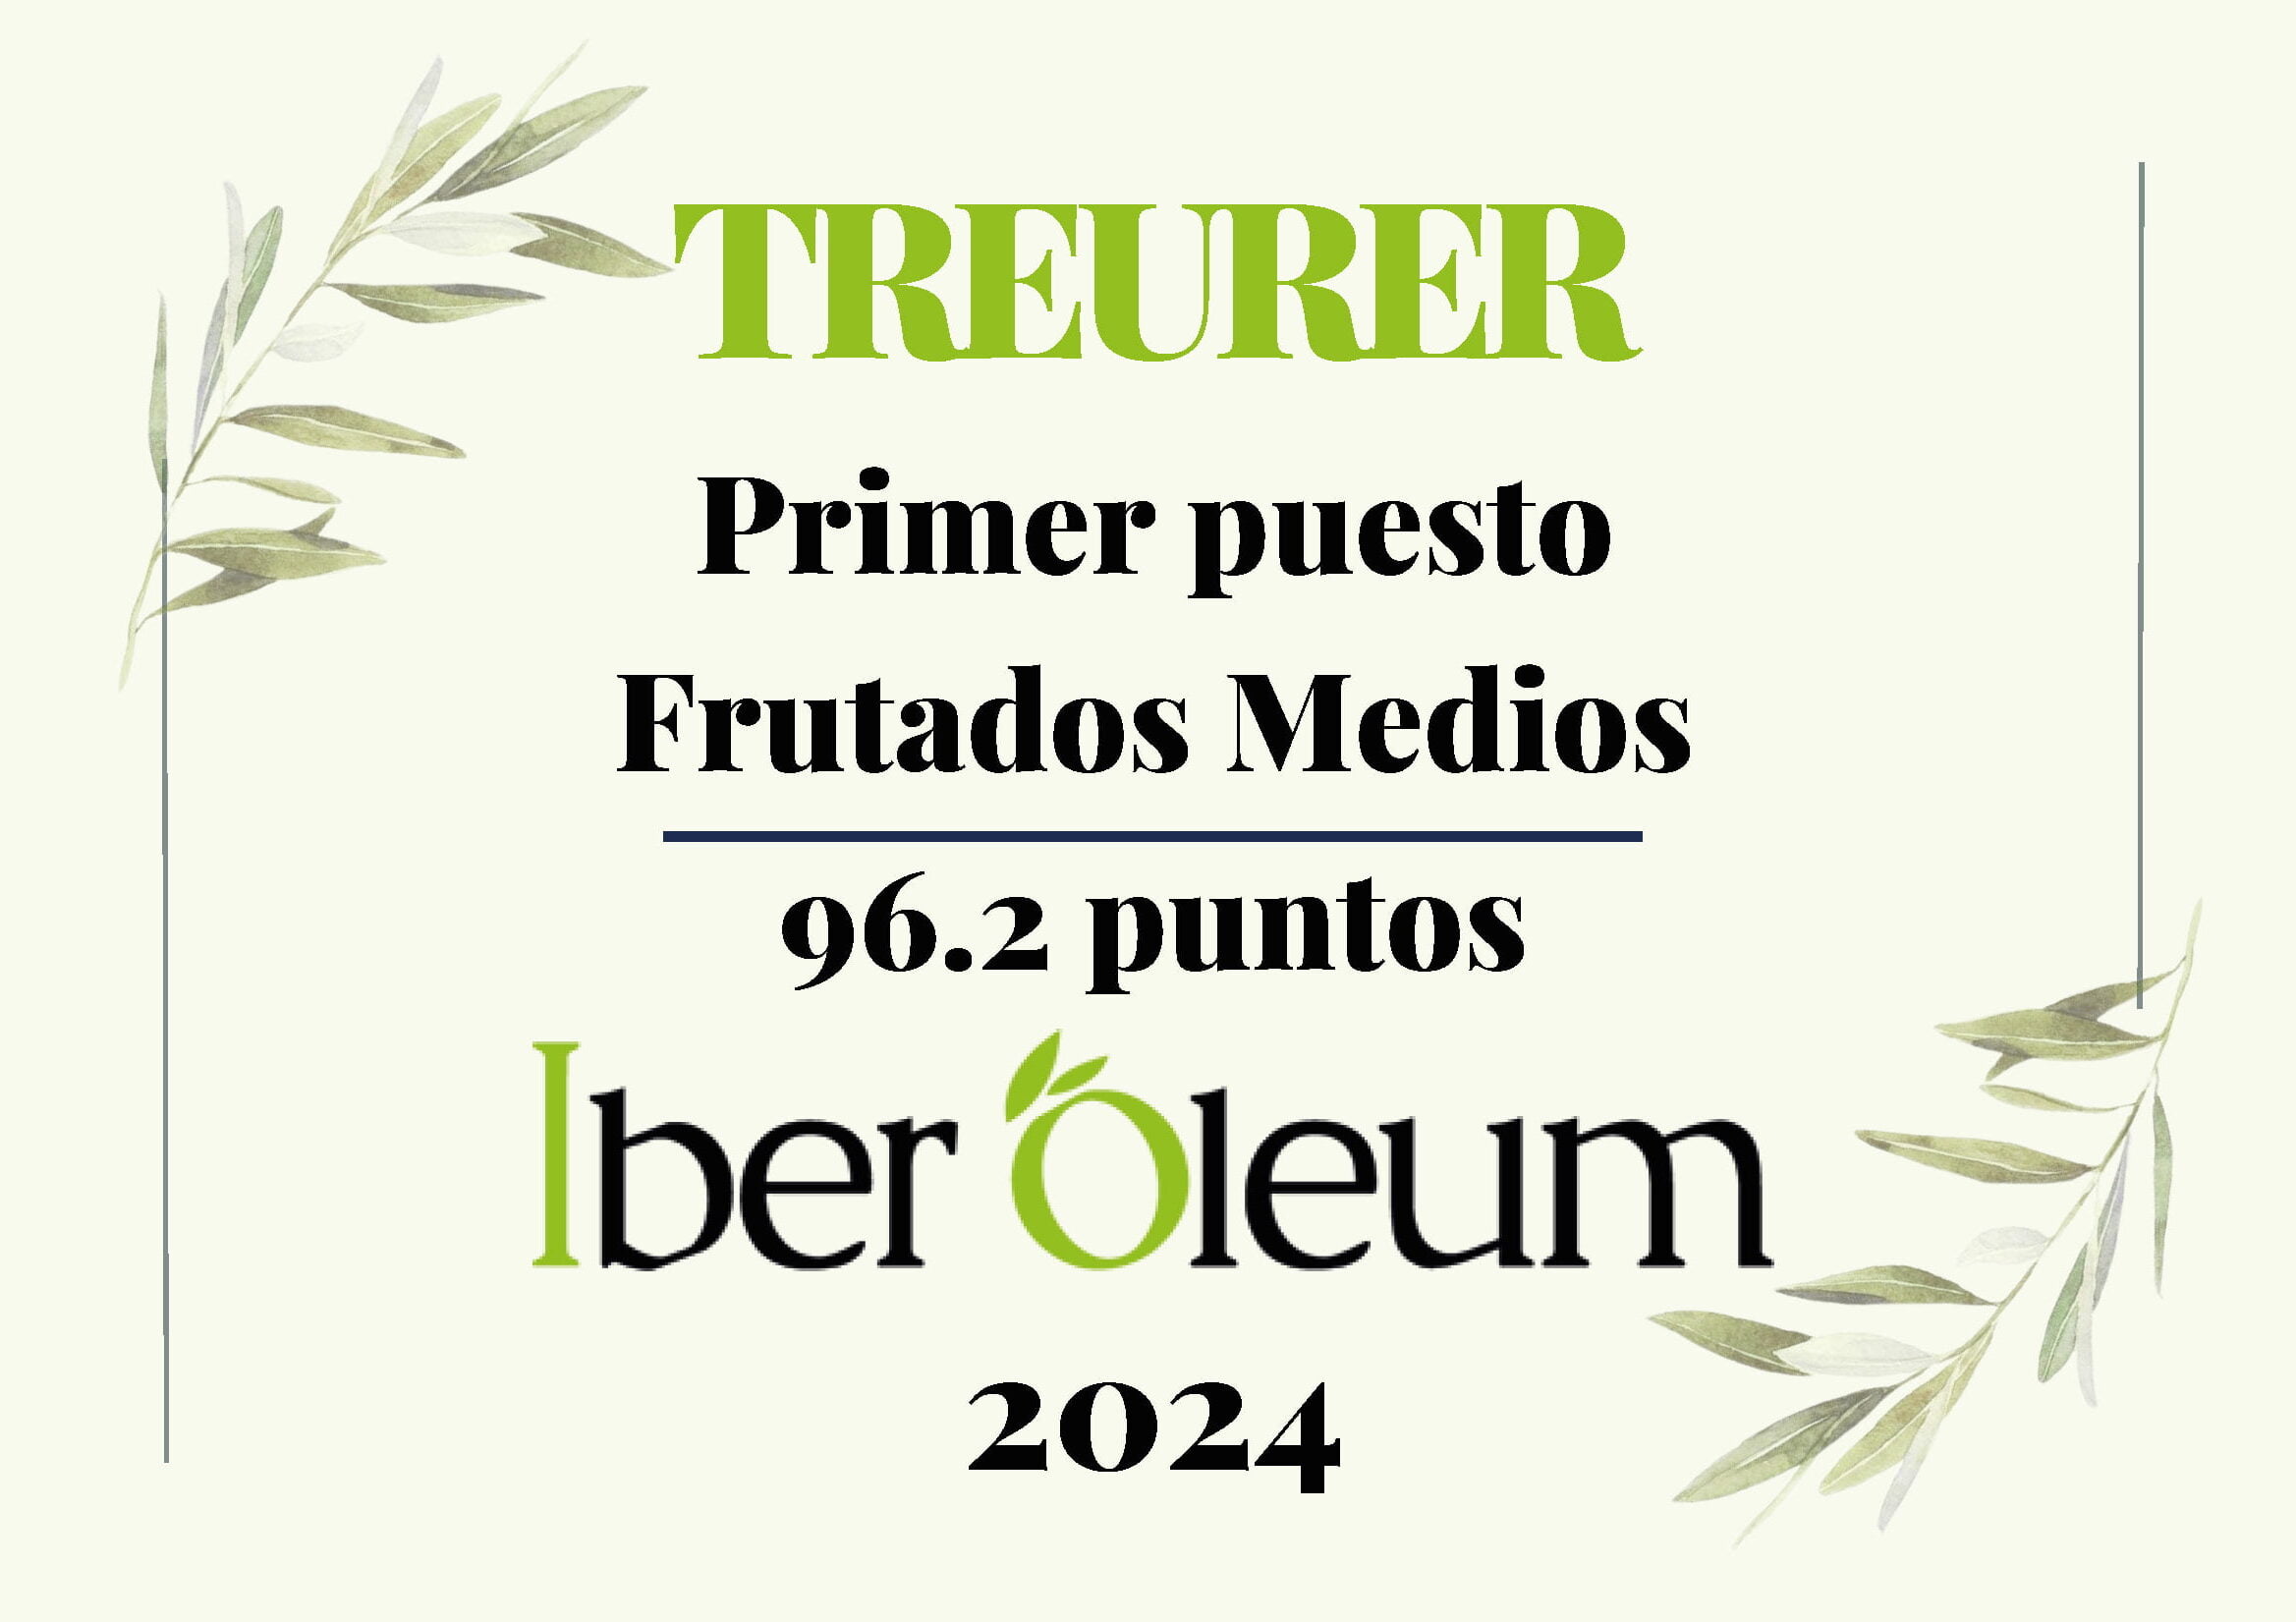 Premio Iberoleum 2024 Treurer - Primer puesto en frutados medios